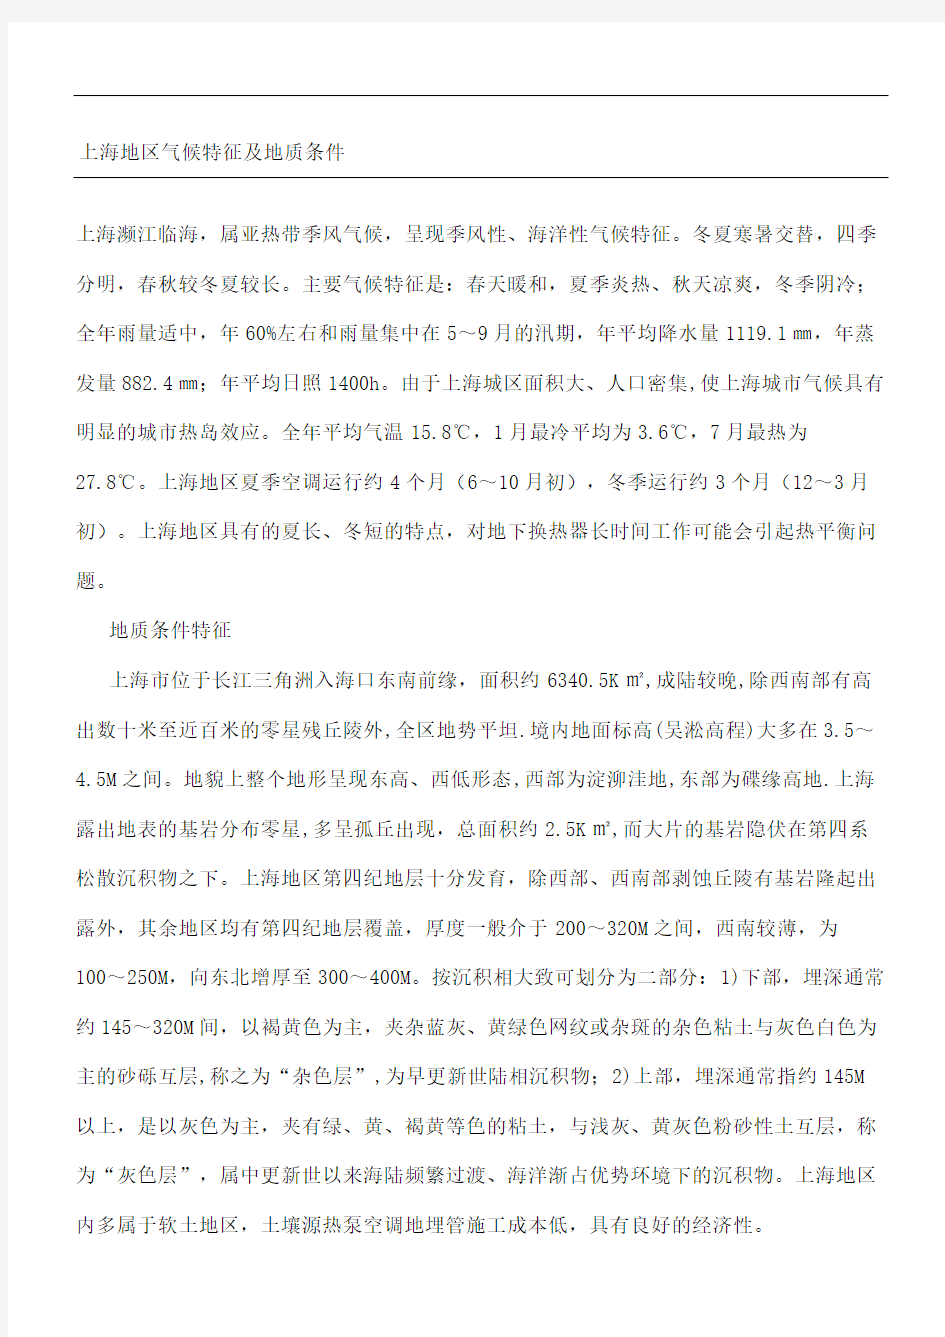 上海地区气候特征及地质条件